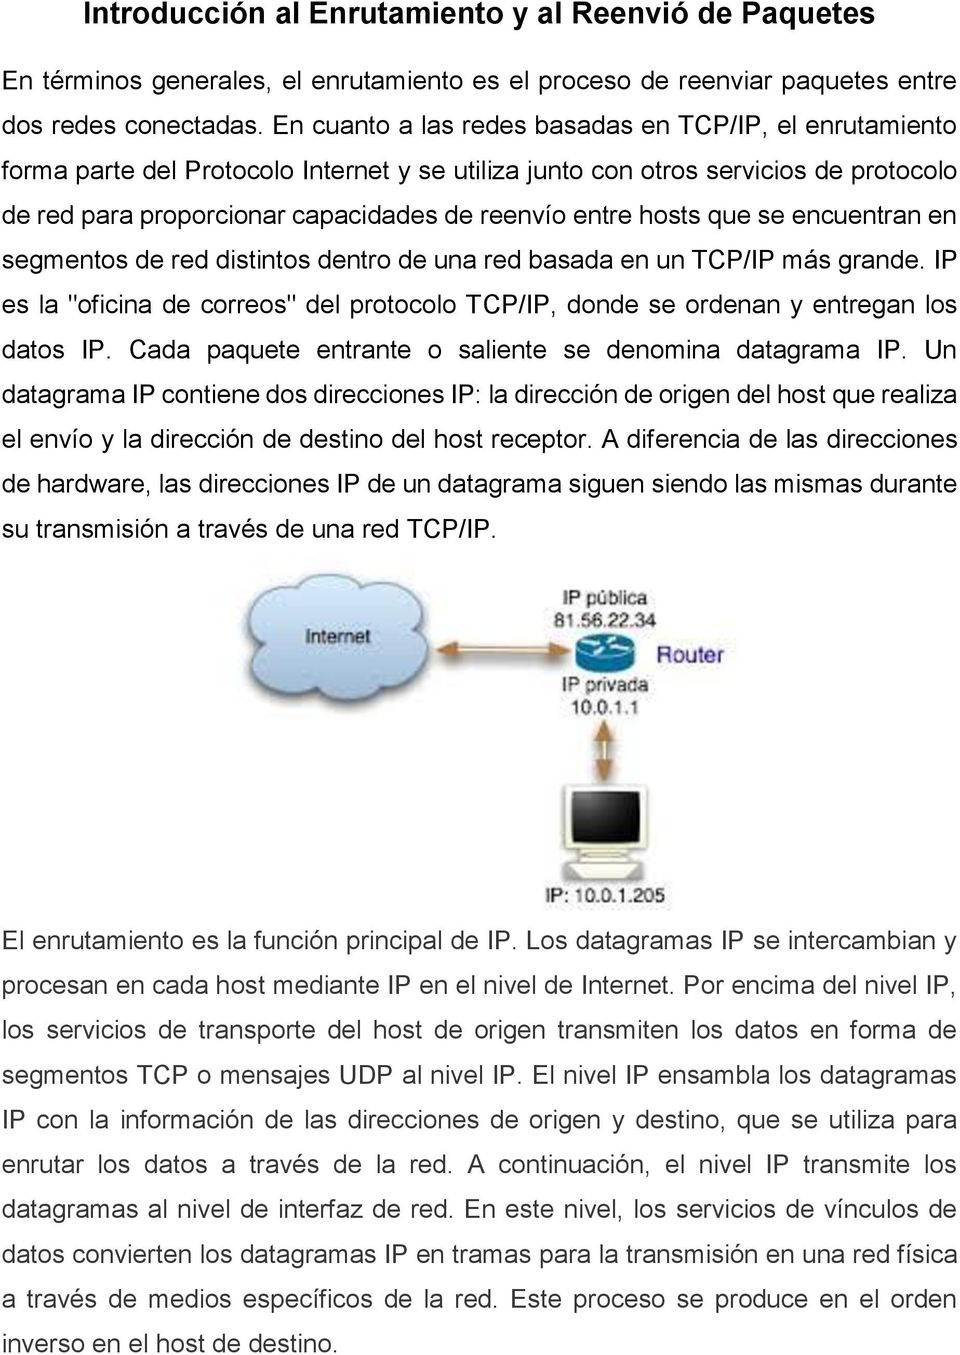 hosts que se encuentran en segmentos de red distintos dentro de una red basada en un TCP/IP más grande. IP es la "oficina de correos" del protocolo TCP/IP, donde se ordenan y entregan los datos IP.